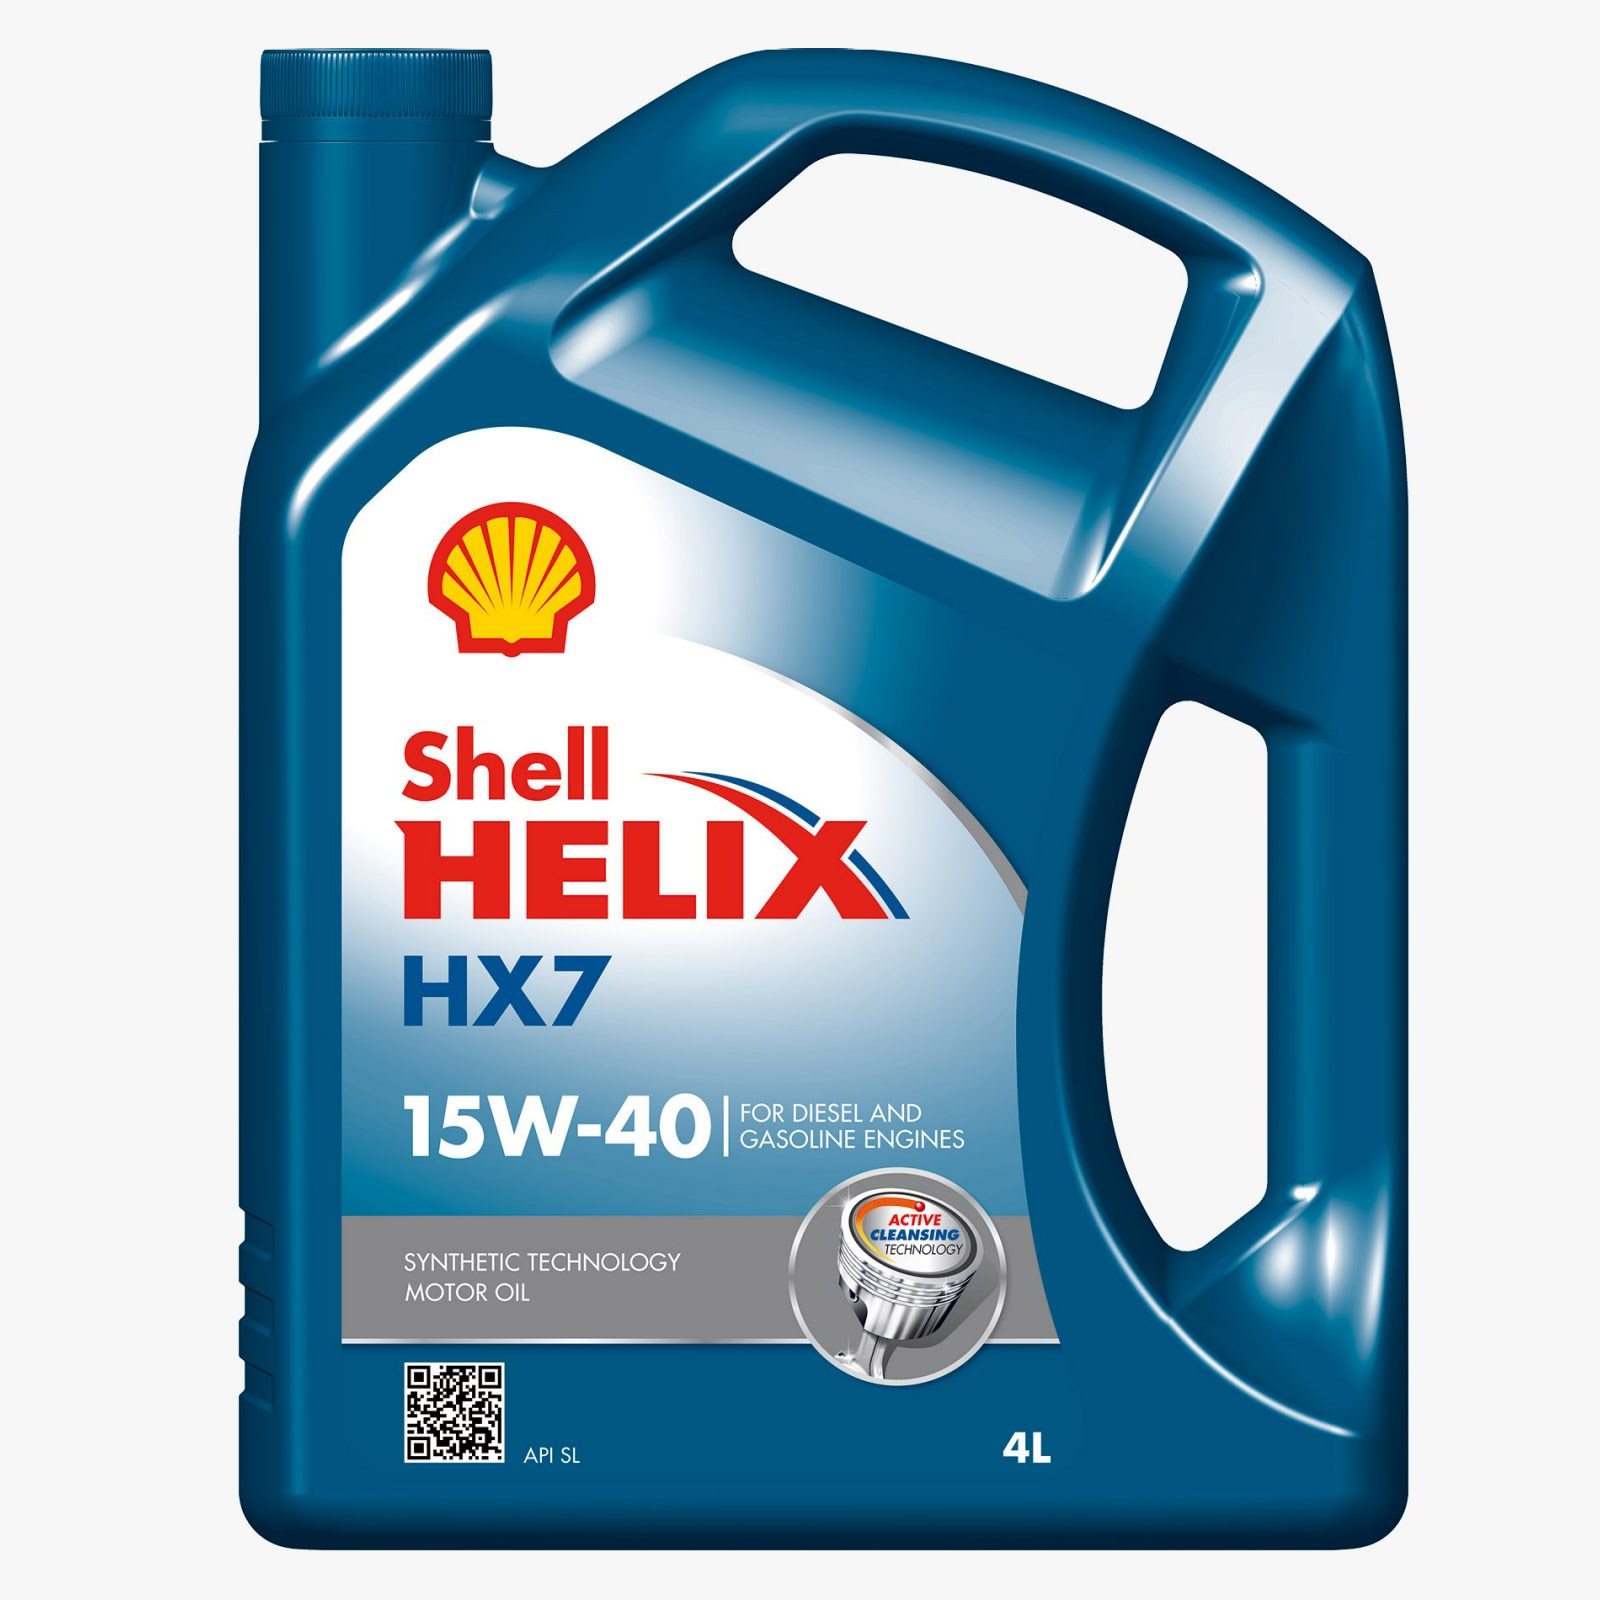 SHELL HELIX HX7 15W-40